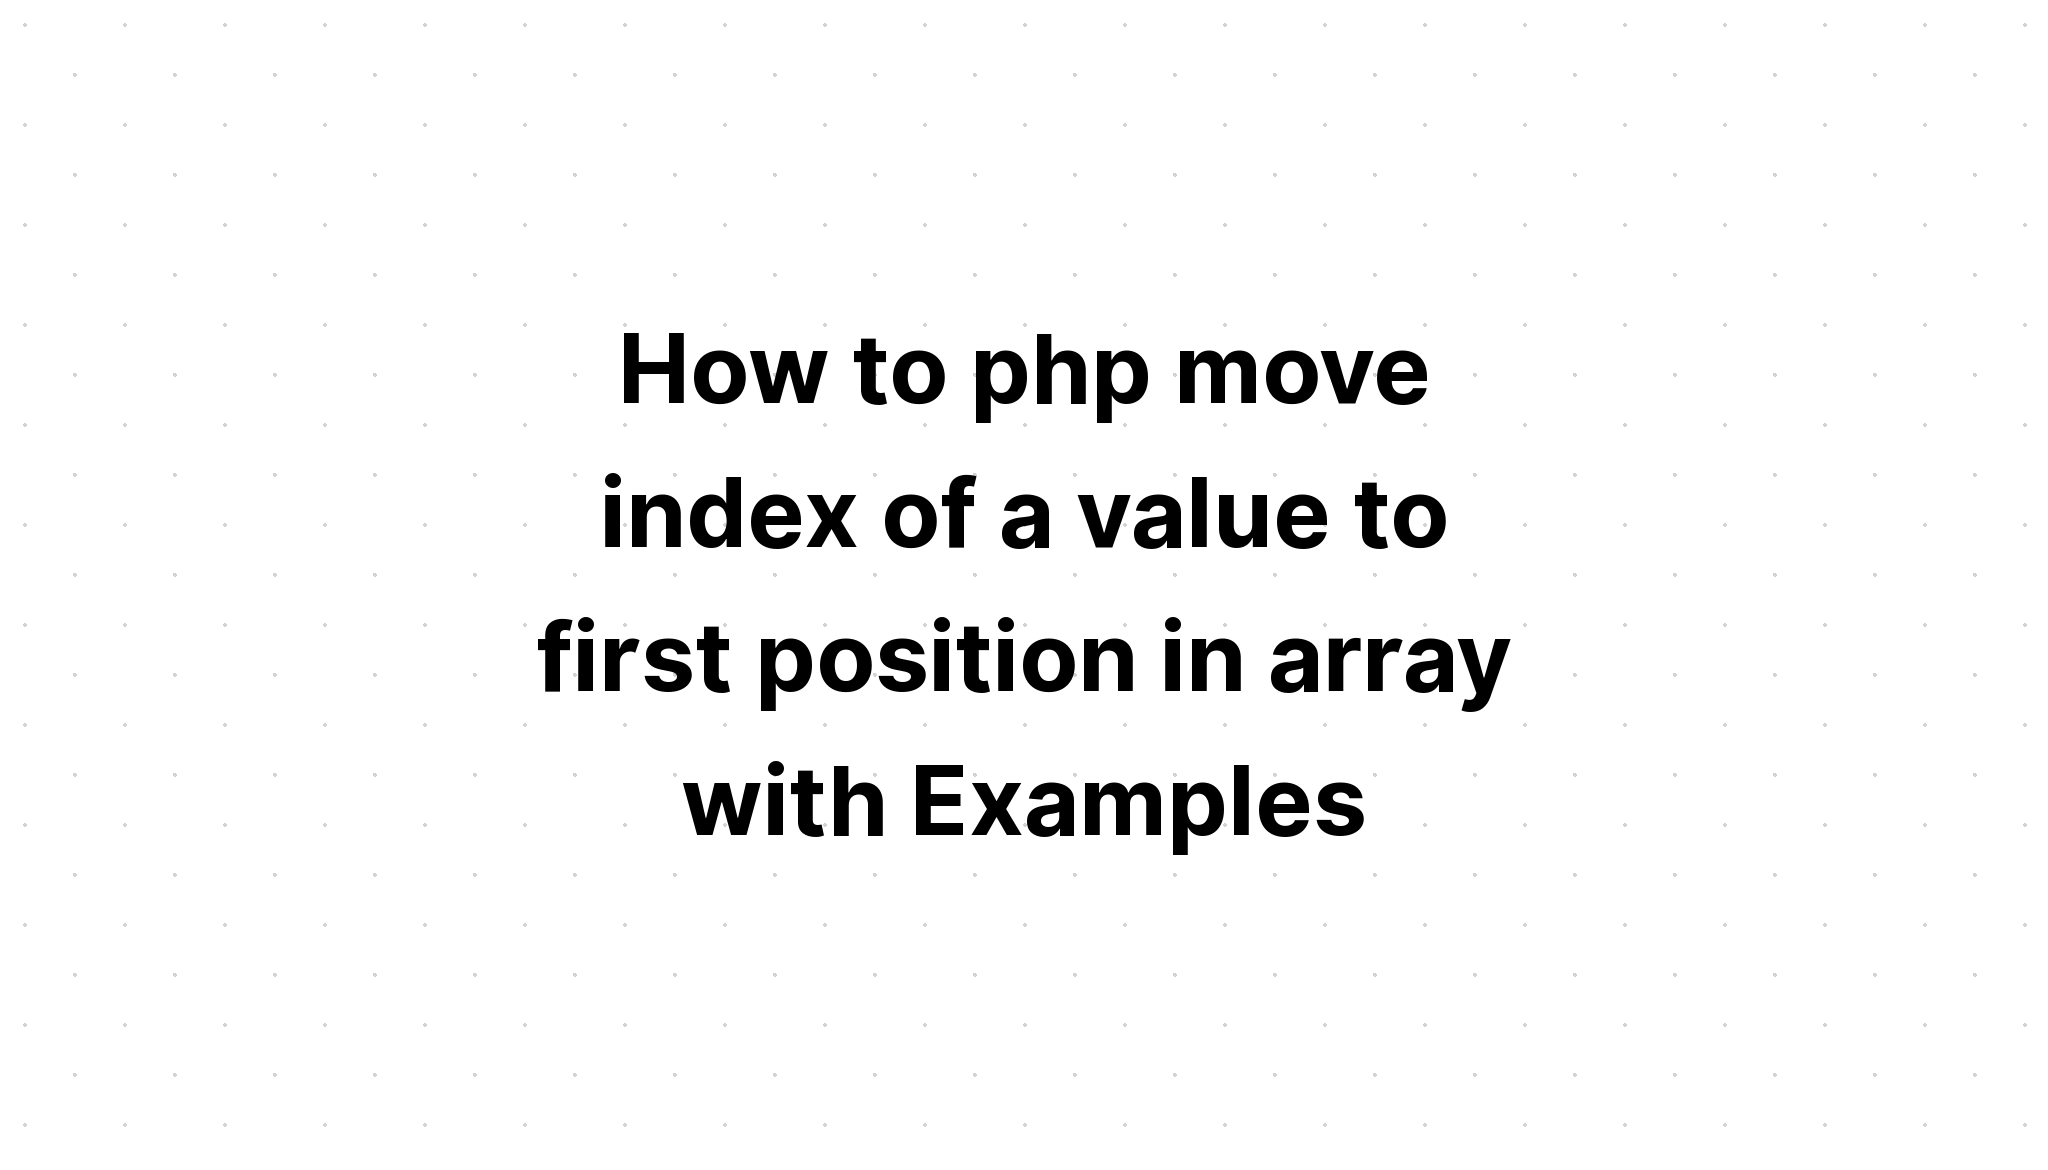 Cara php memindahkan indeks nilai ke posisi pertama dalam array dengan Contoh